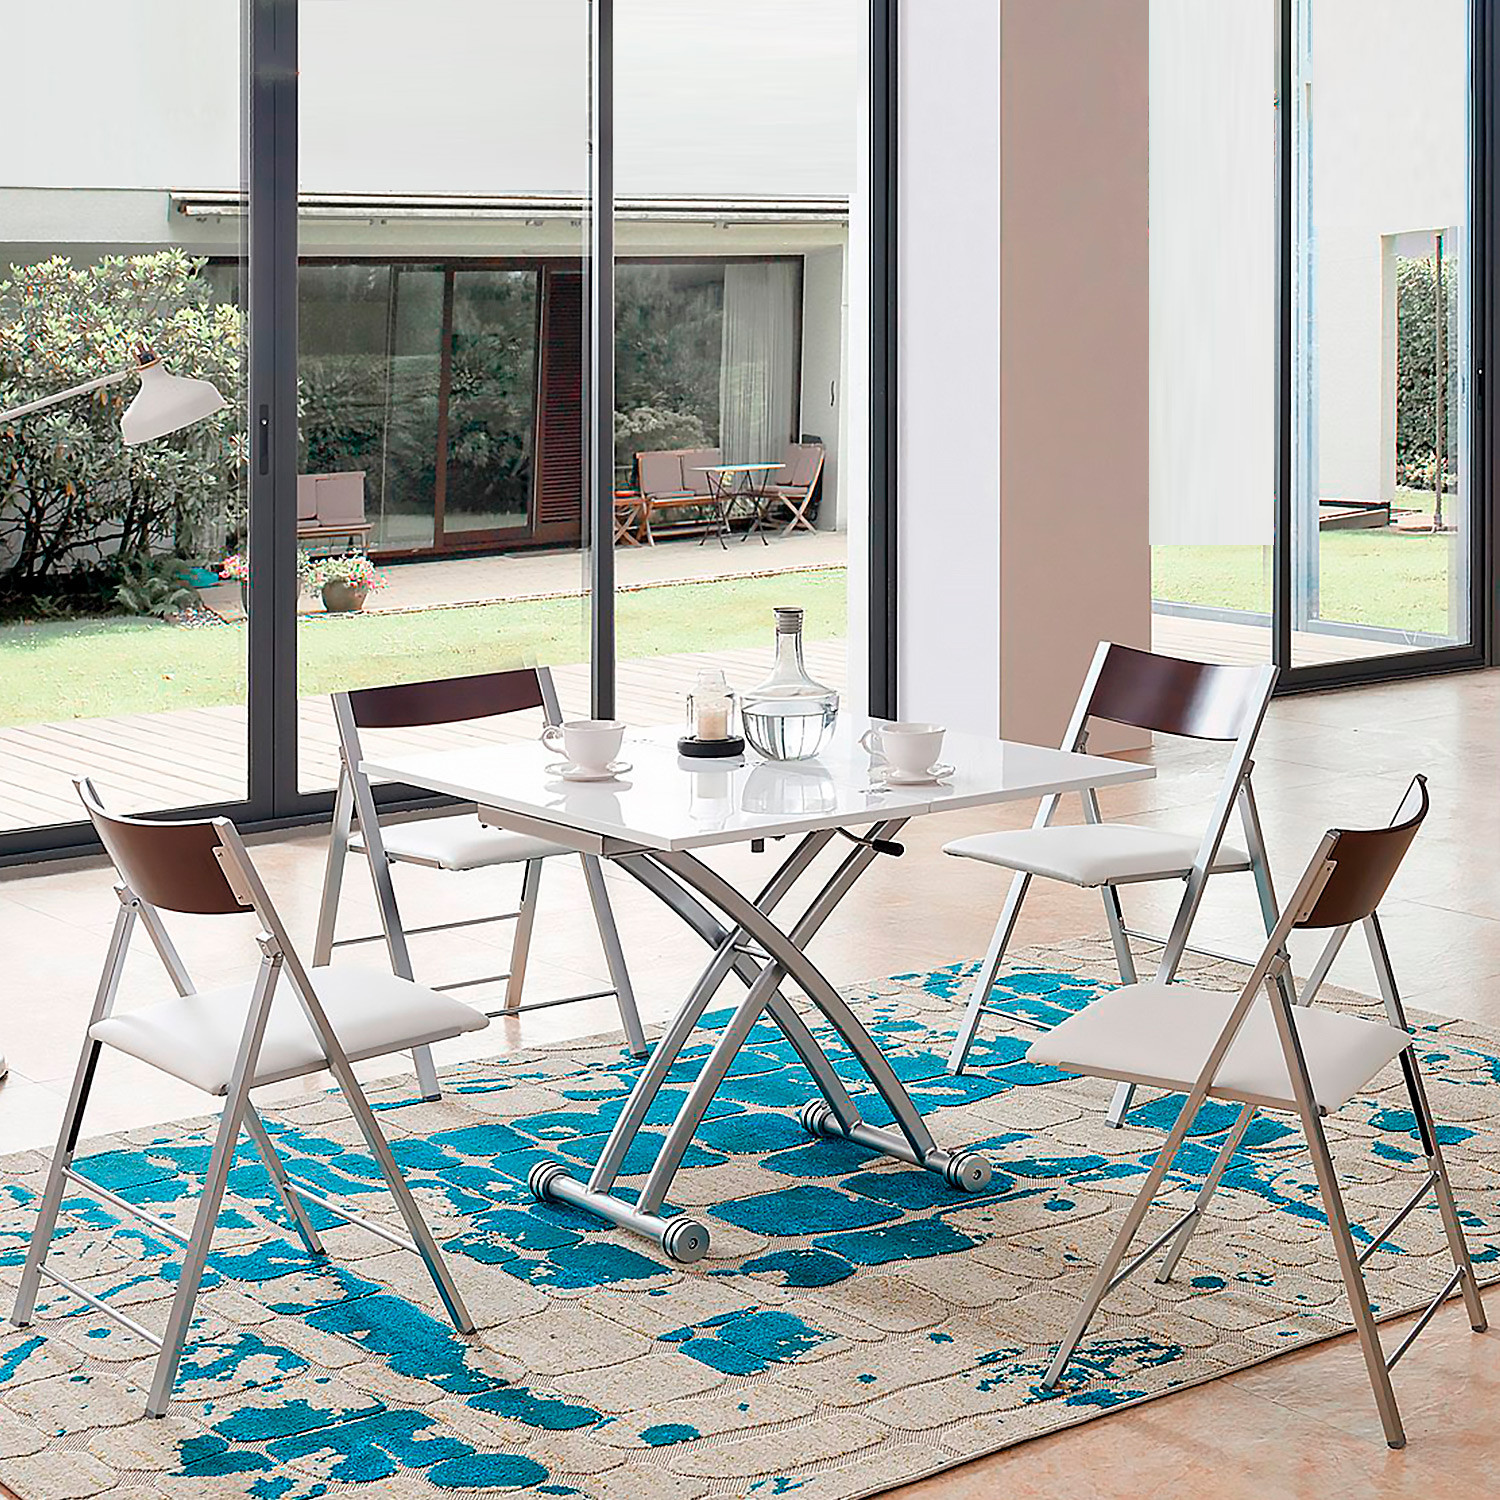 Столы-трансформеры В2242-1-C белый глянец / серебристый фото 1 — New Style of Furniture